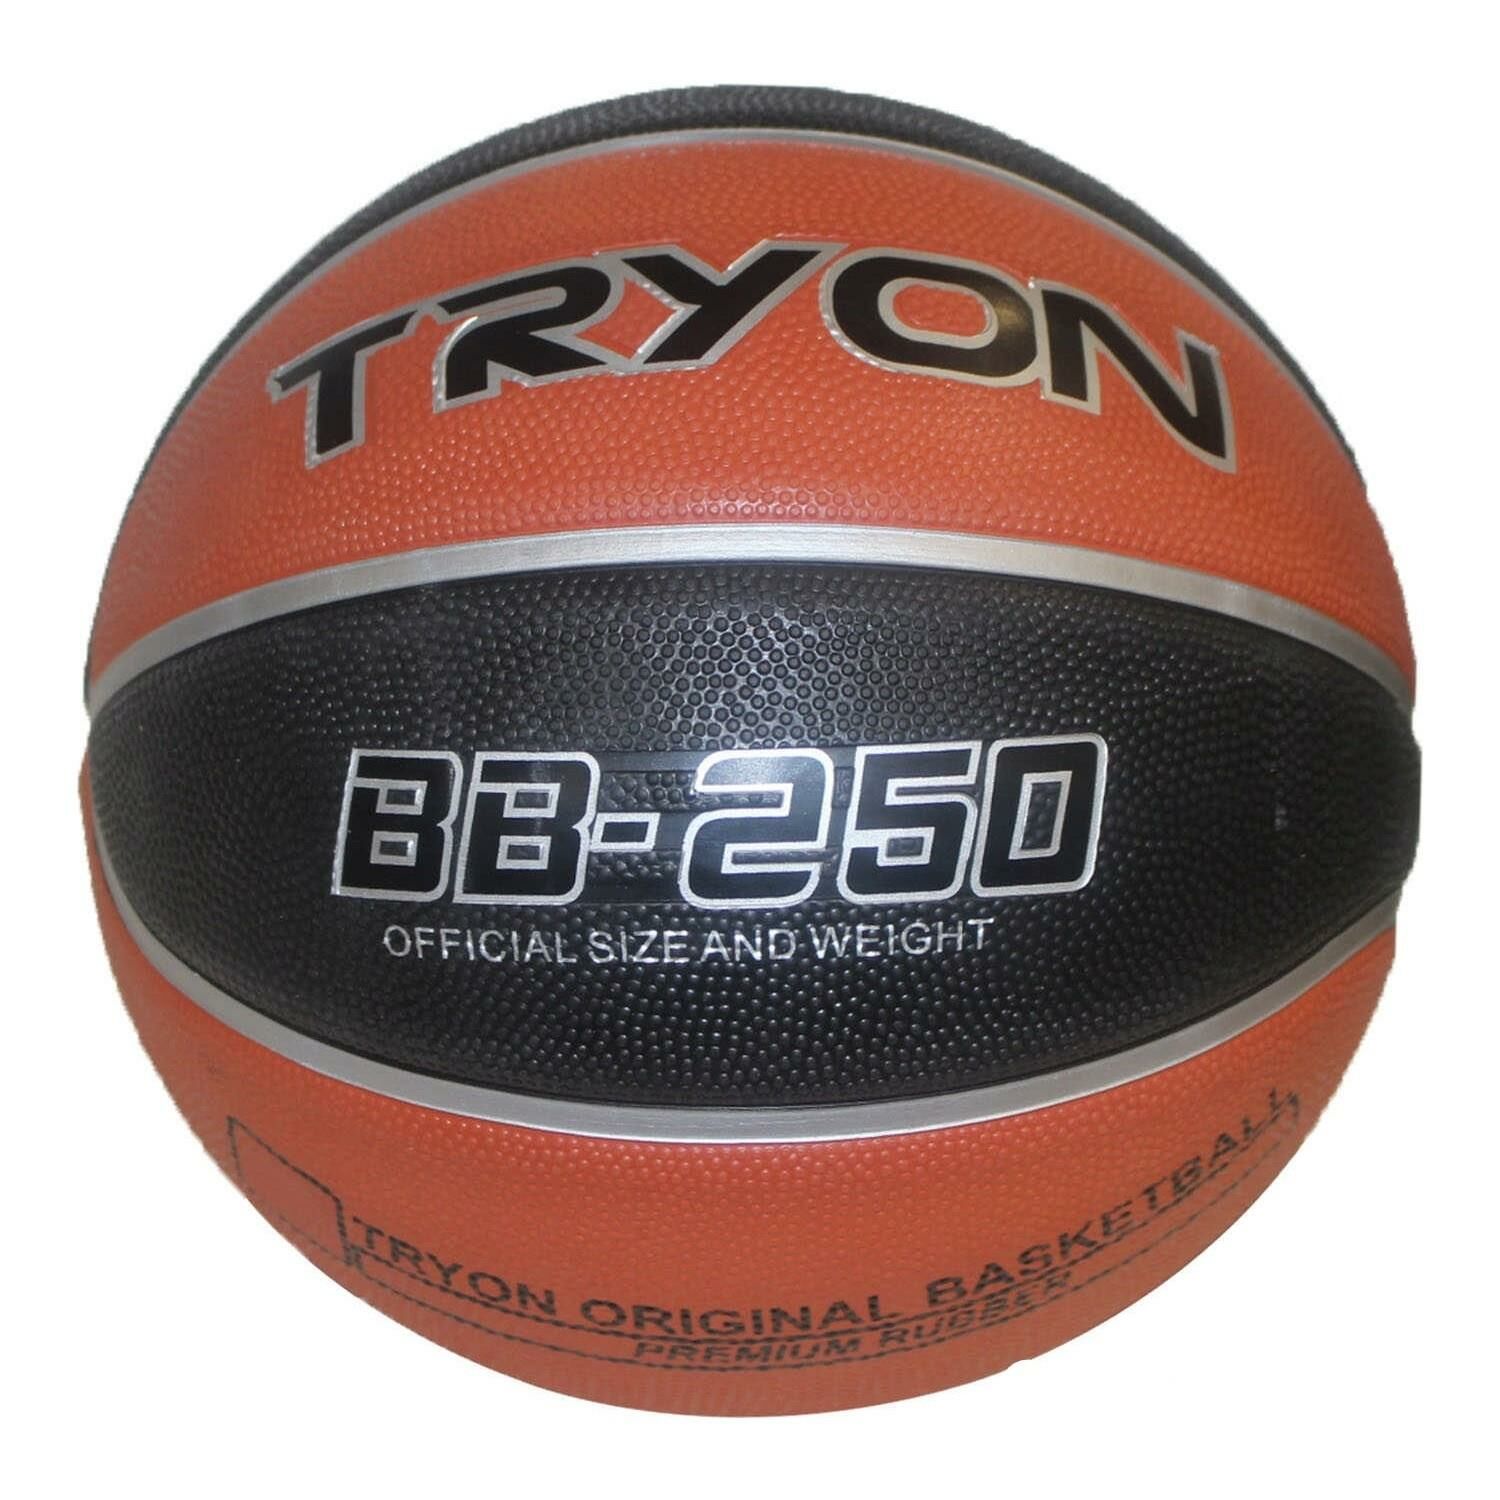 Tryon BB-250 Basketbol Topu 6 No